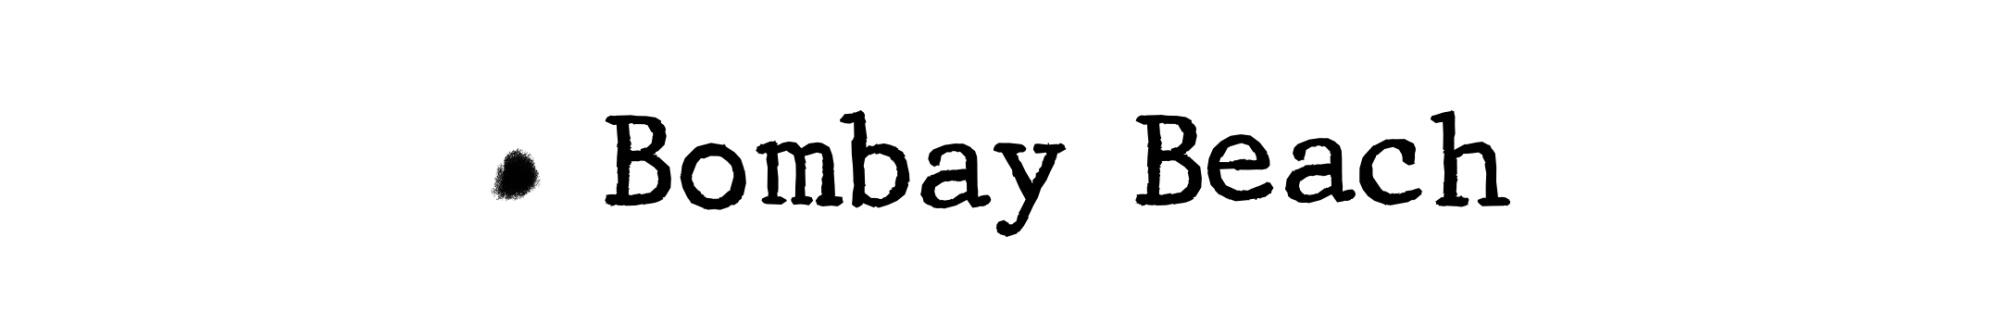 A header reading "Bombay Beach"